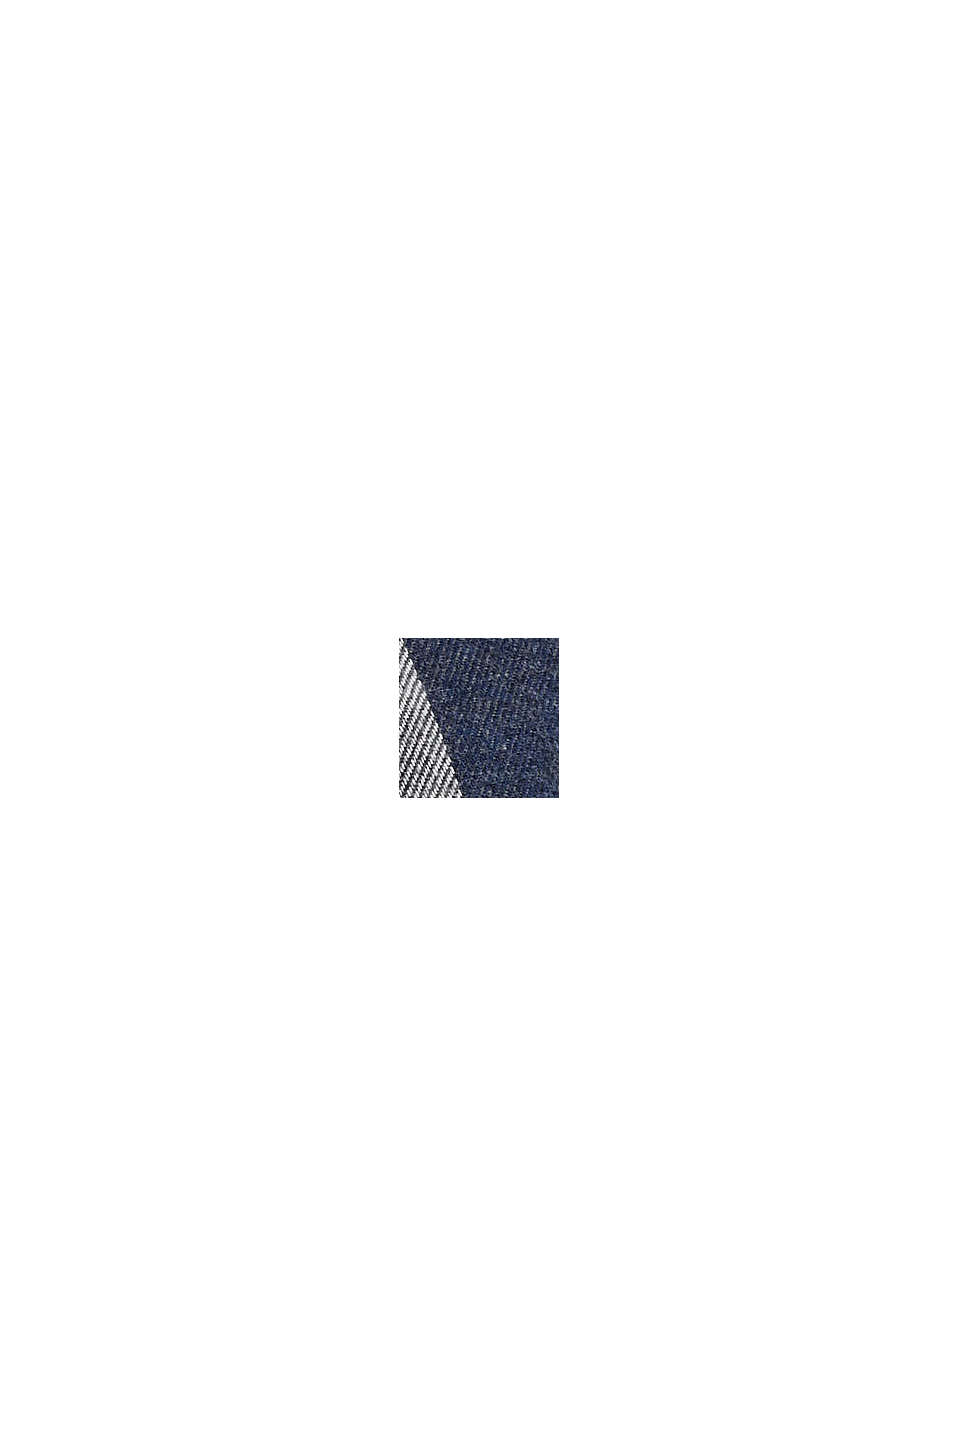 Kariertes Flanellhemd aus Baumwolle, DARK BLUE, swatch